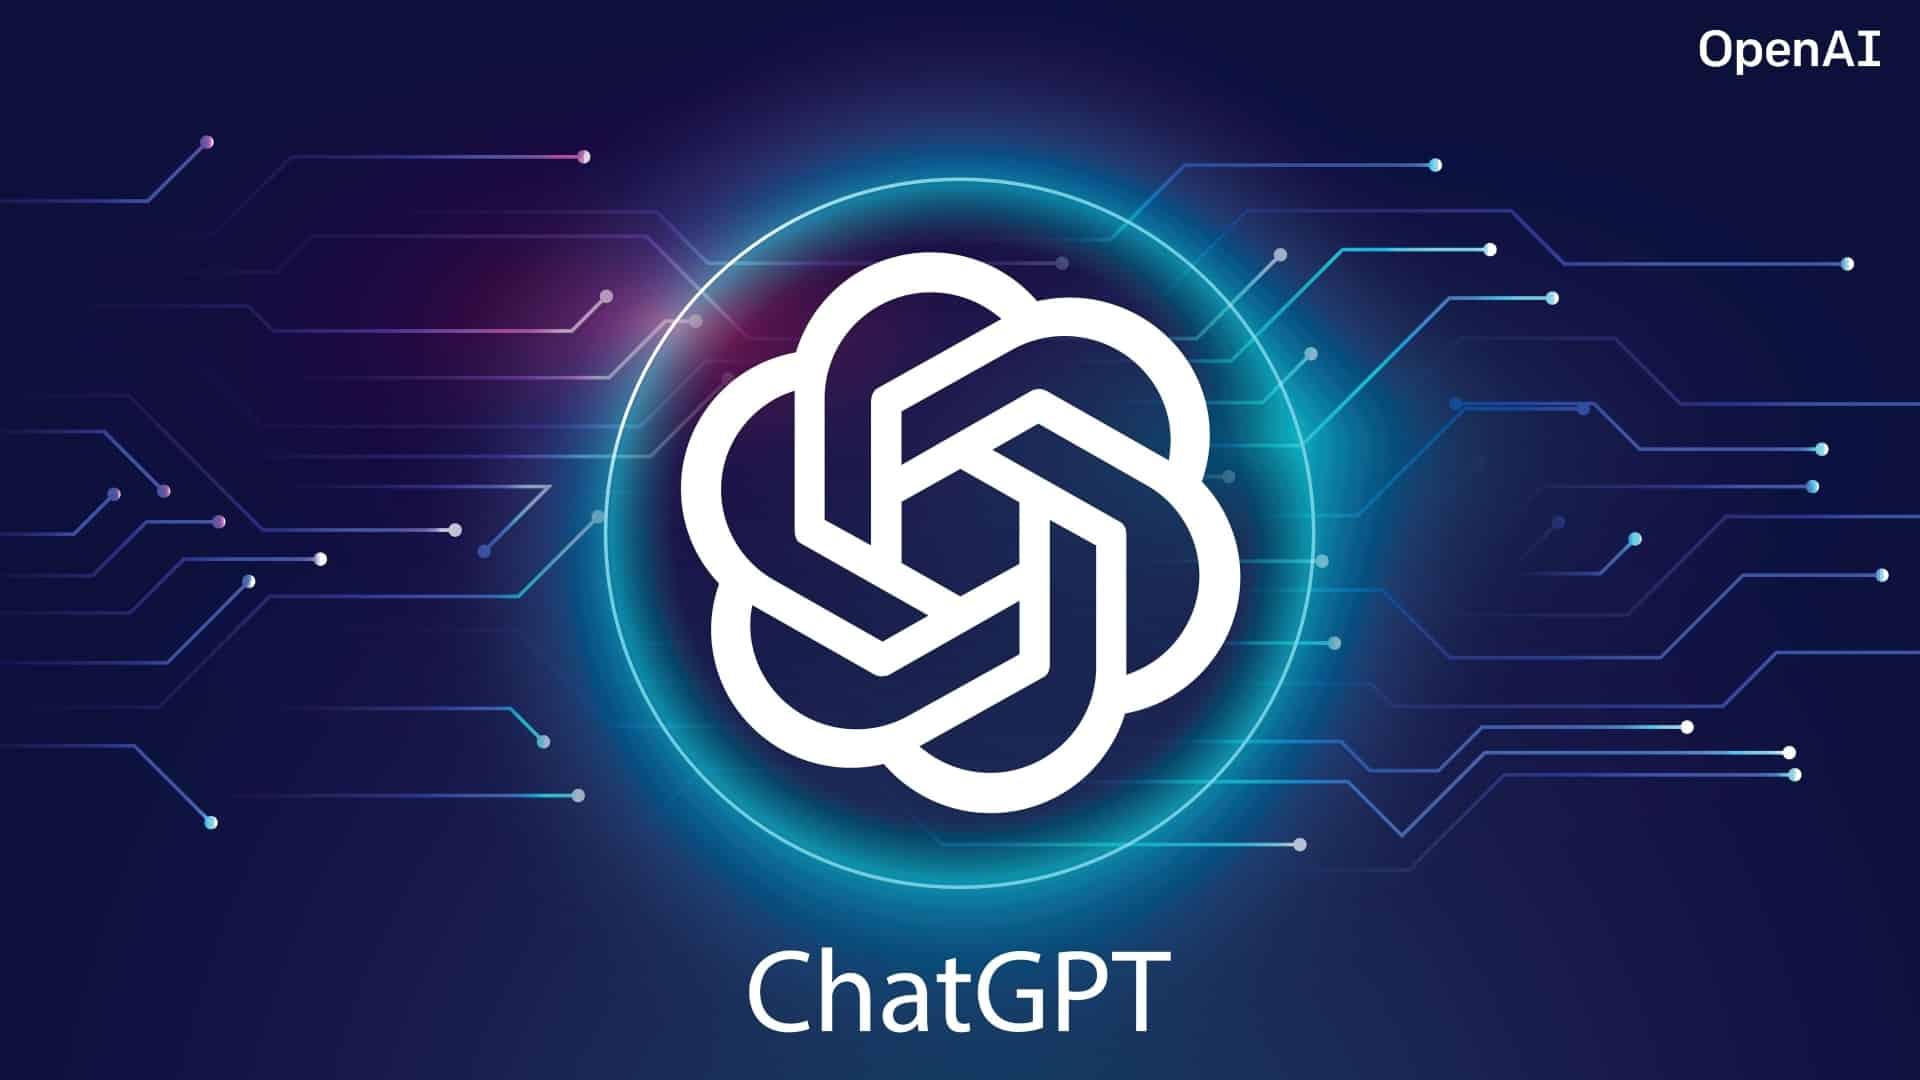 这是一张OpenAI的ChatGPT标志图片，展示了中间的白色图案和名称，背景是深蓝色带有电路板设计元素。